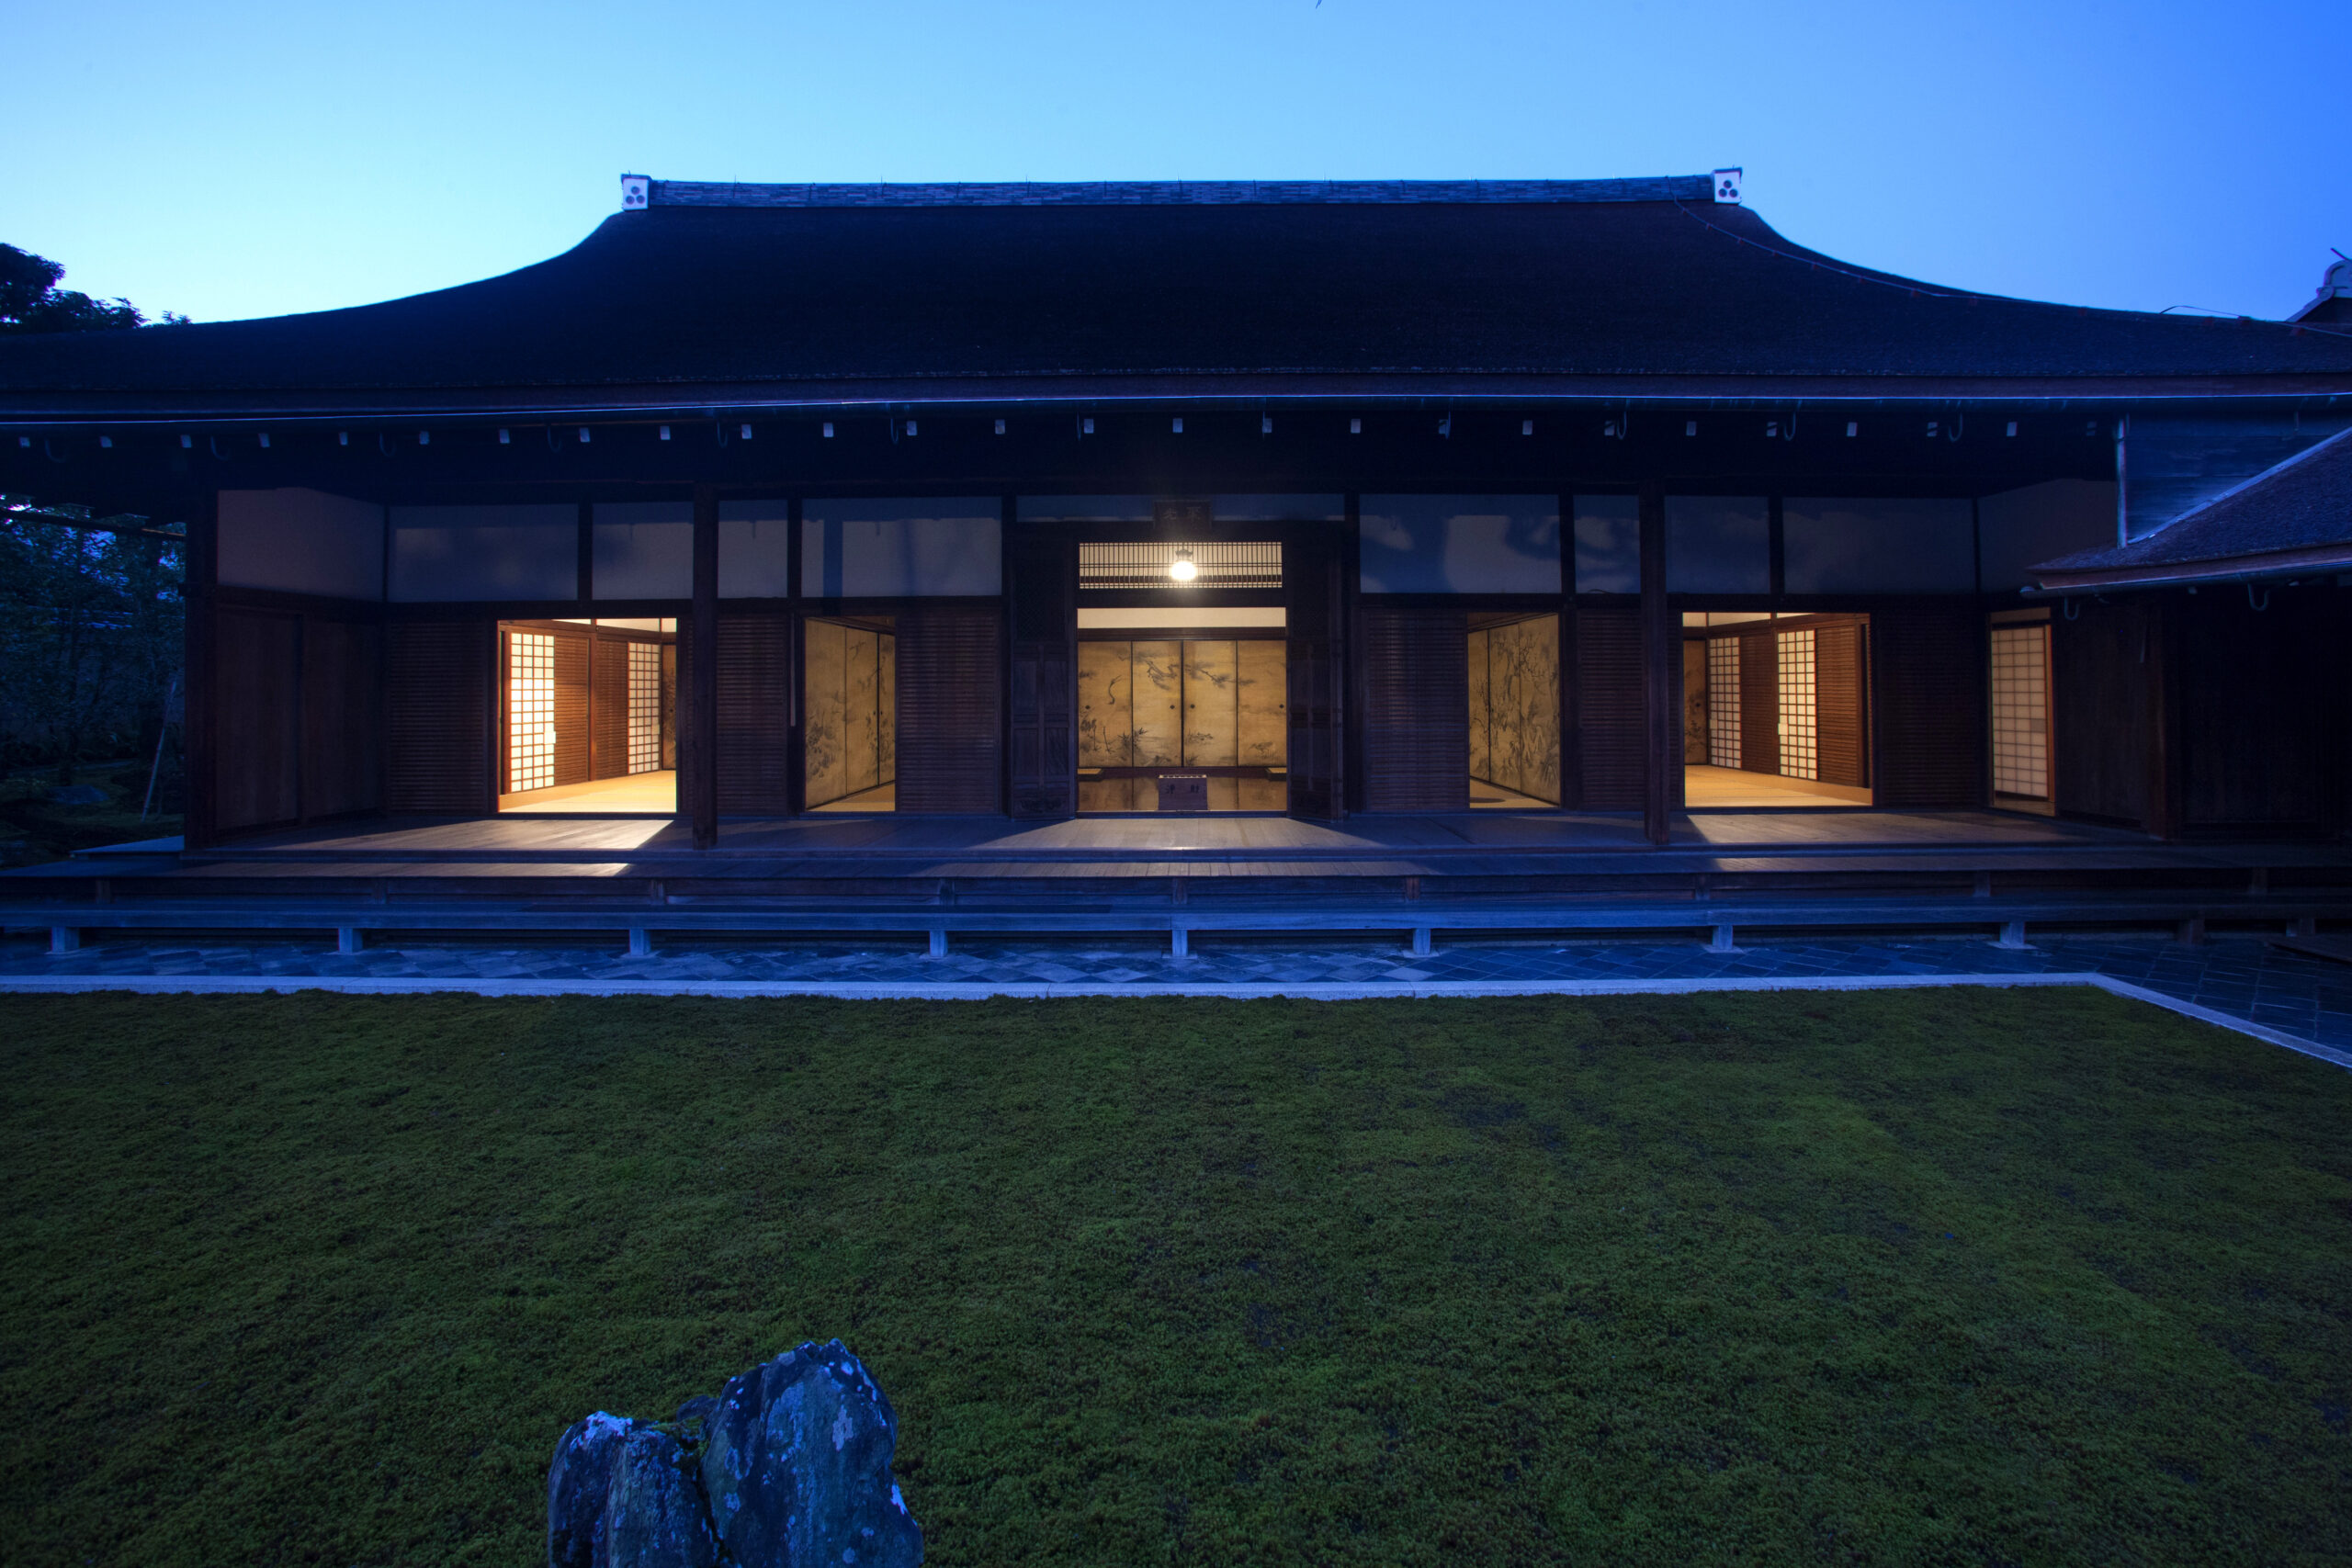 京都最大的寺廟之一的禪宗佛教寺廟大德寺塔頭「聚光院」特別展出國寶 